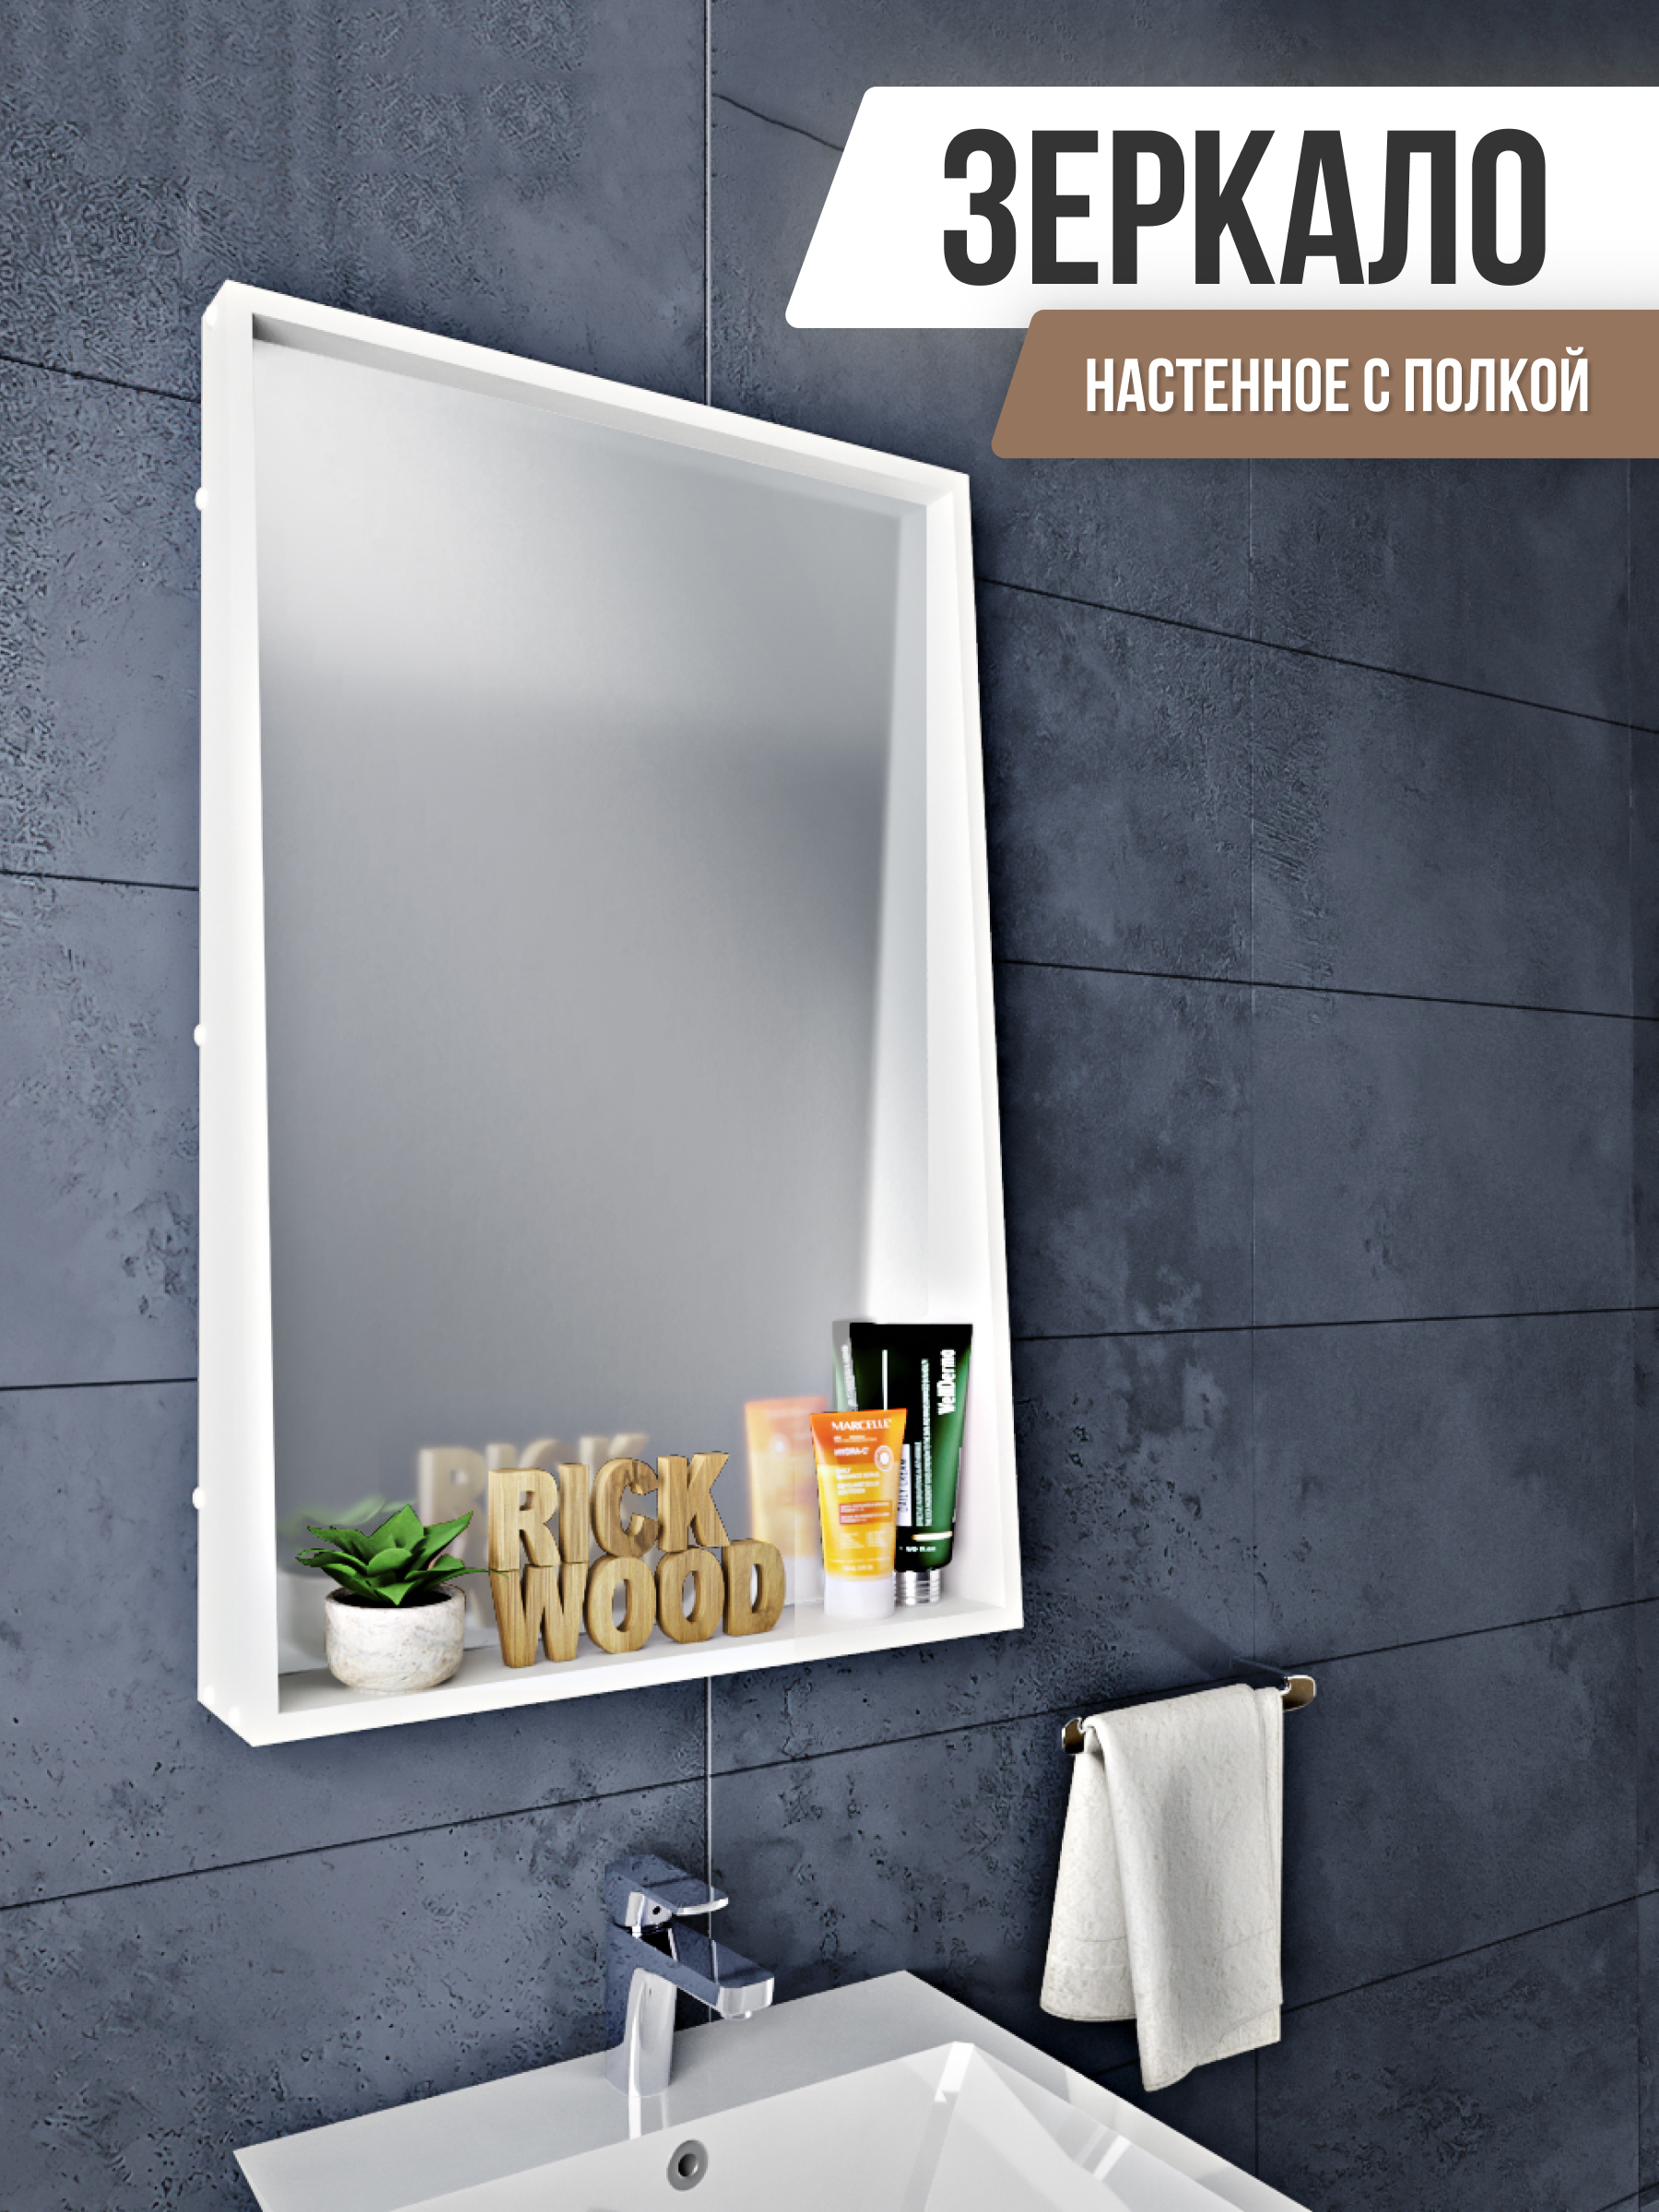 Зеркало в ванную комнату: материалы и декоративные элементы